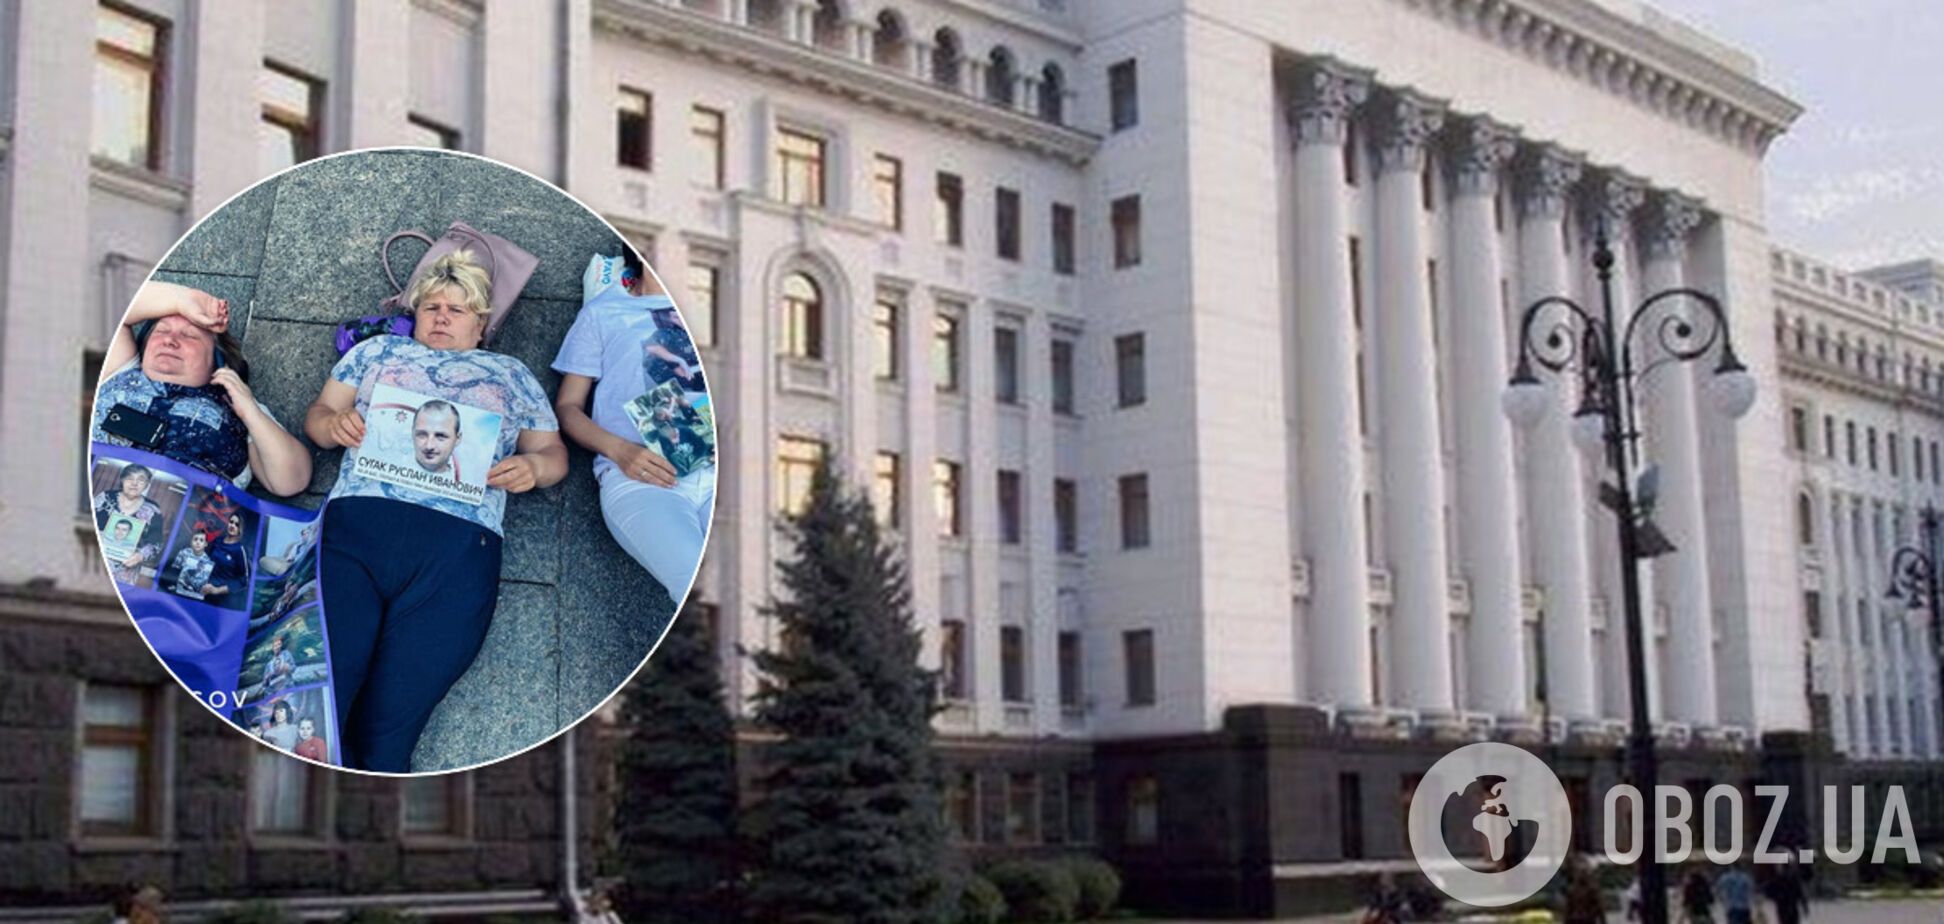 Матері полонених 'Л/ДНР' влаштували 'лежачий' пікет під ОП. Фото й відео